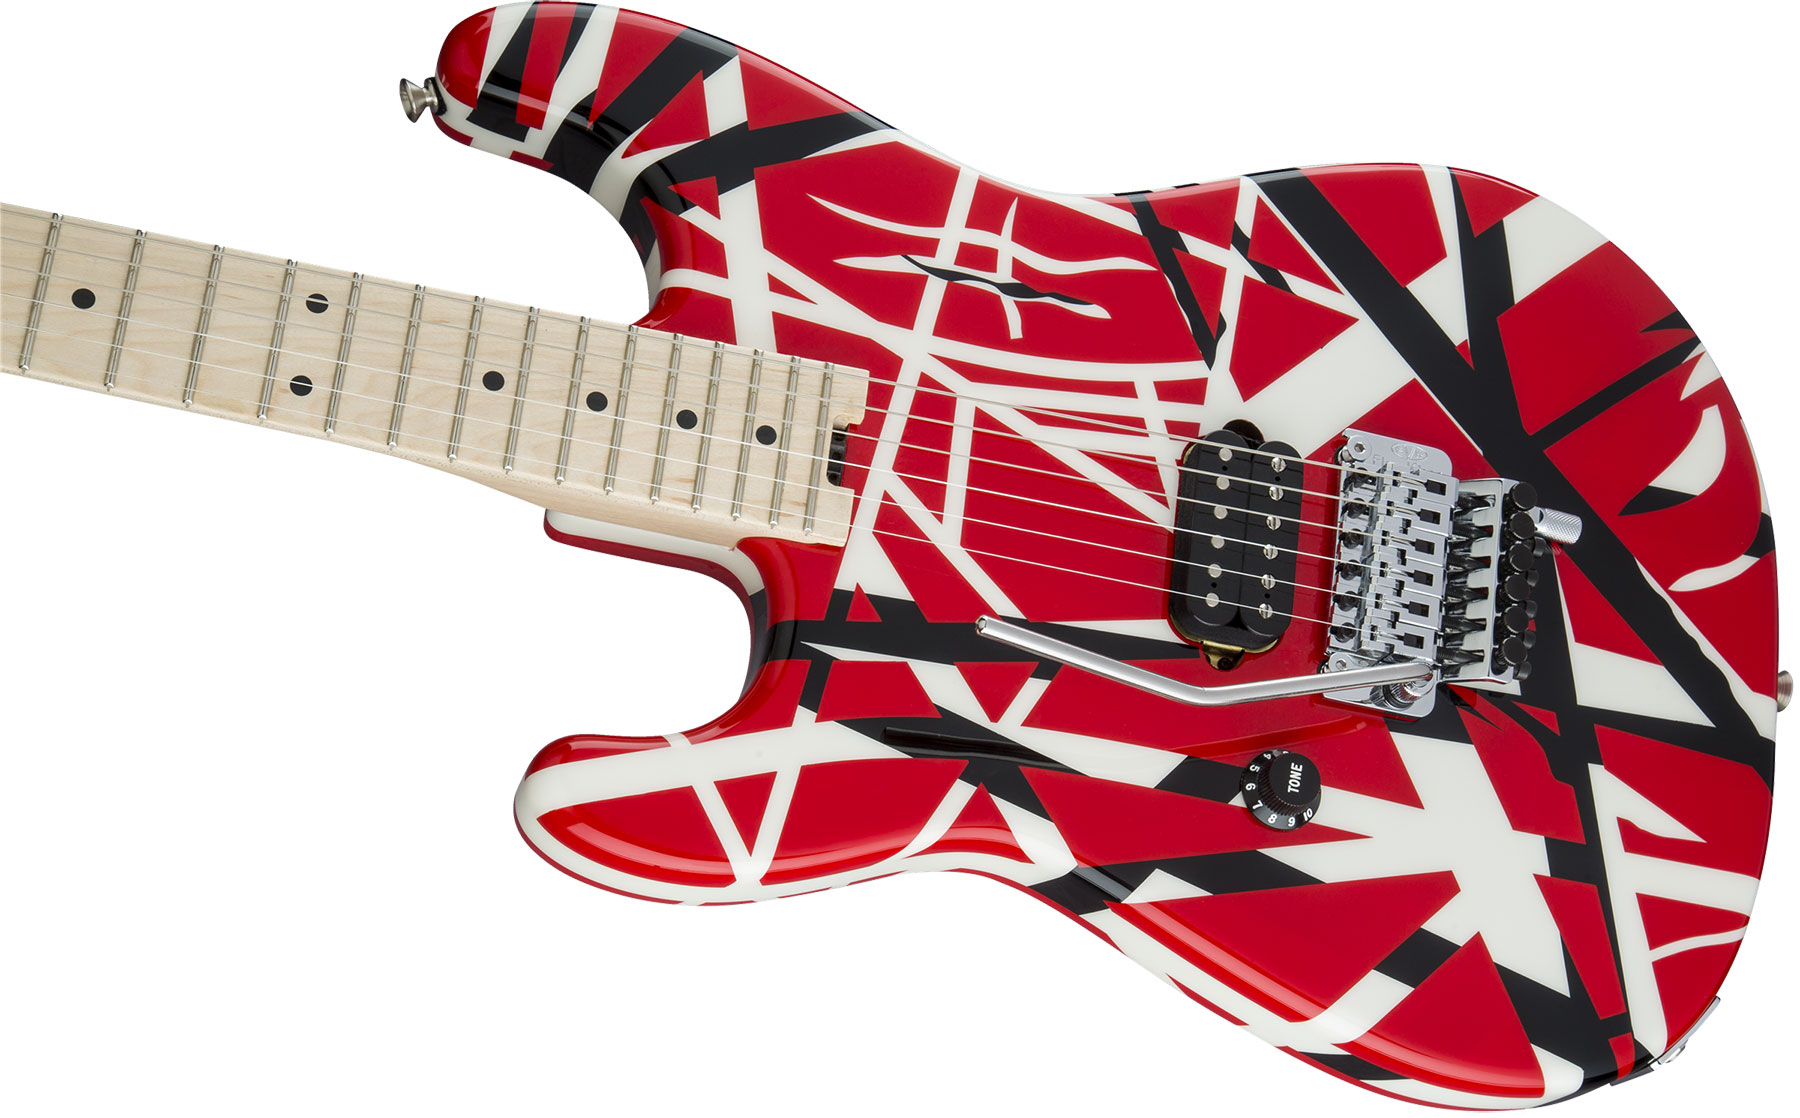 Evh Striped Series Lh Gaucher Signature H Fr Mn - Red Black White Stripes - E-Gitarre für Linkshänder - Variation 2